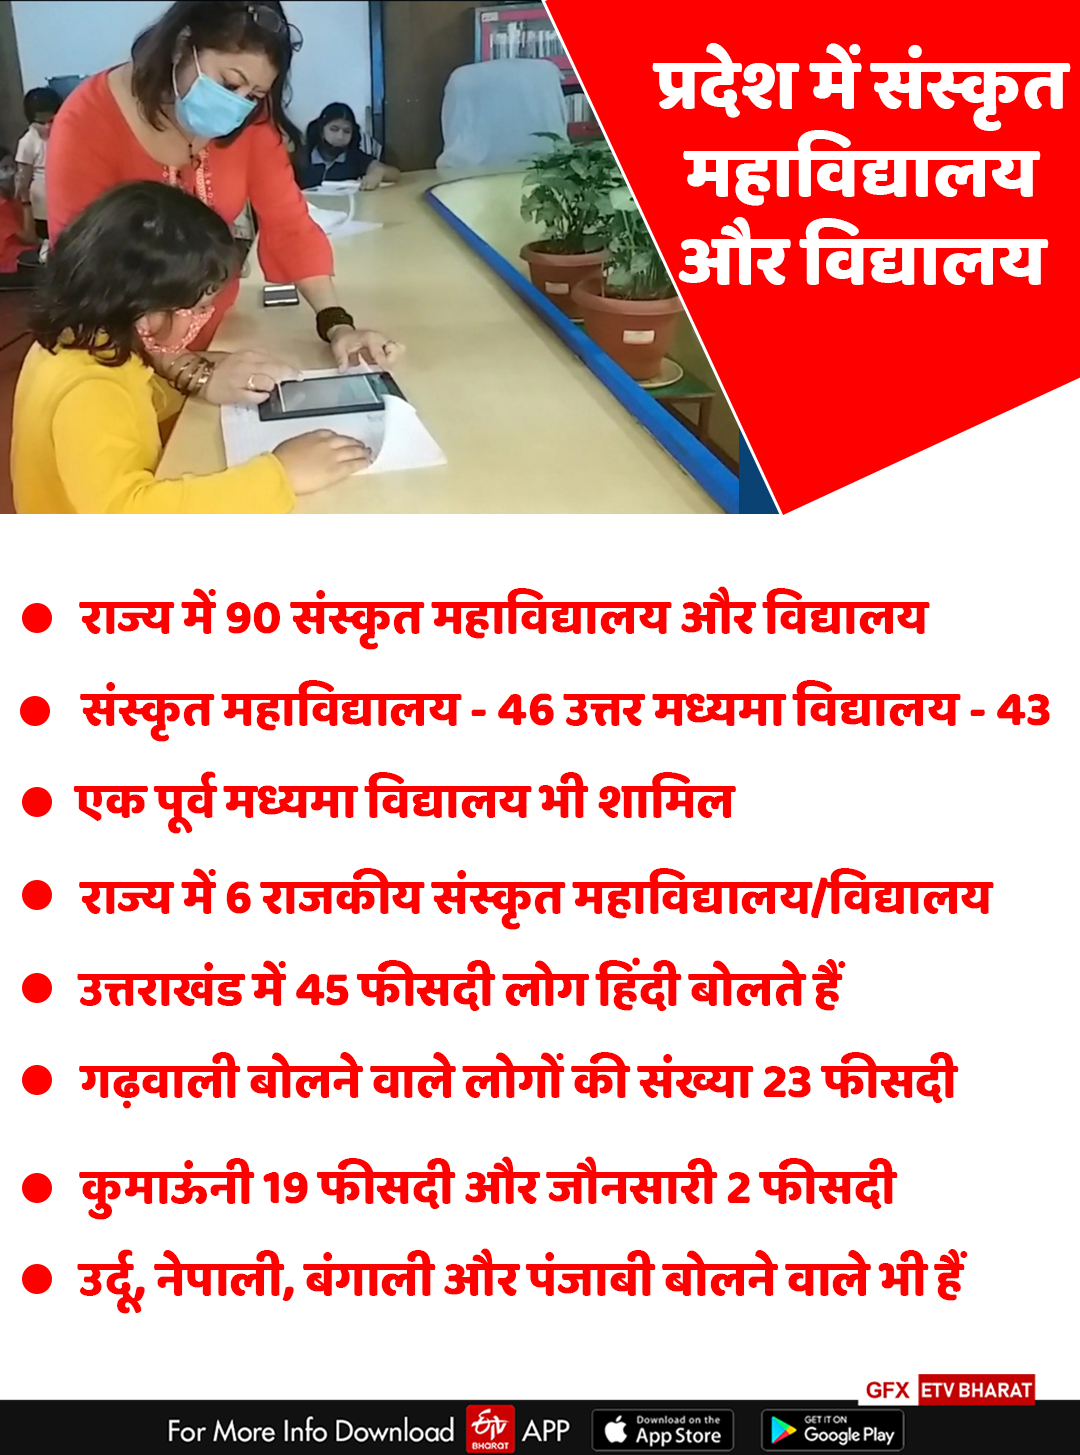 Sanskrit Education in Uttarakhand